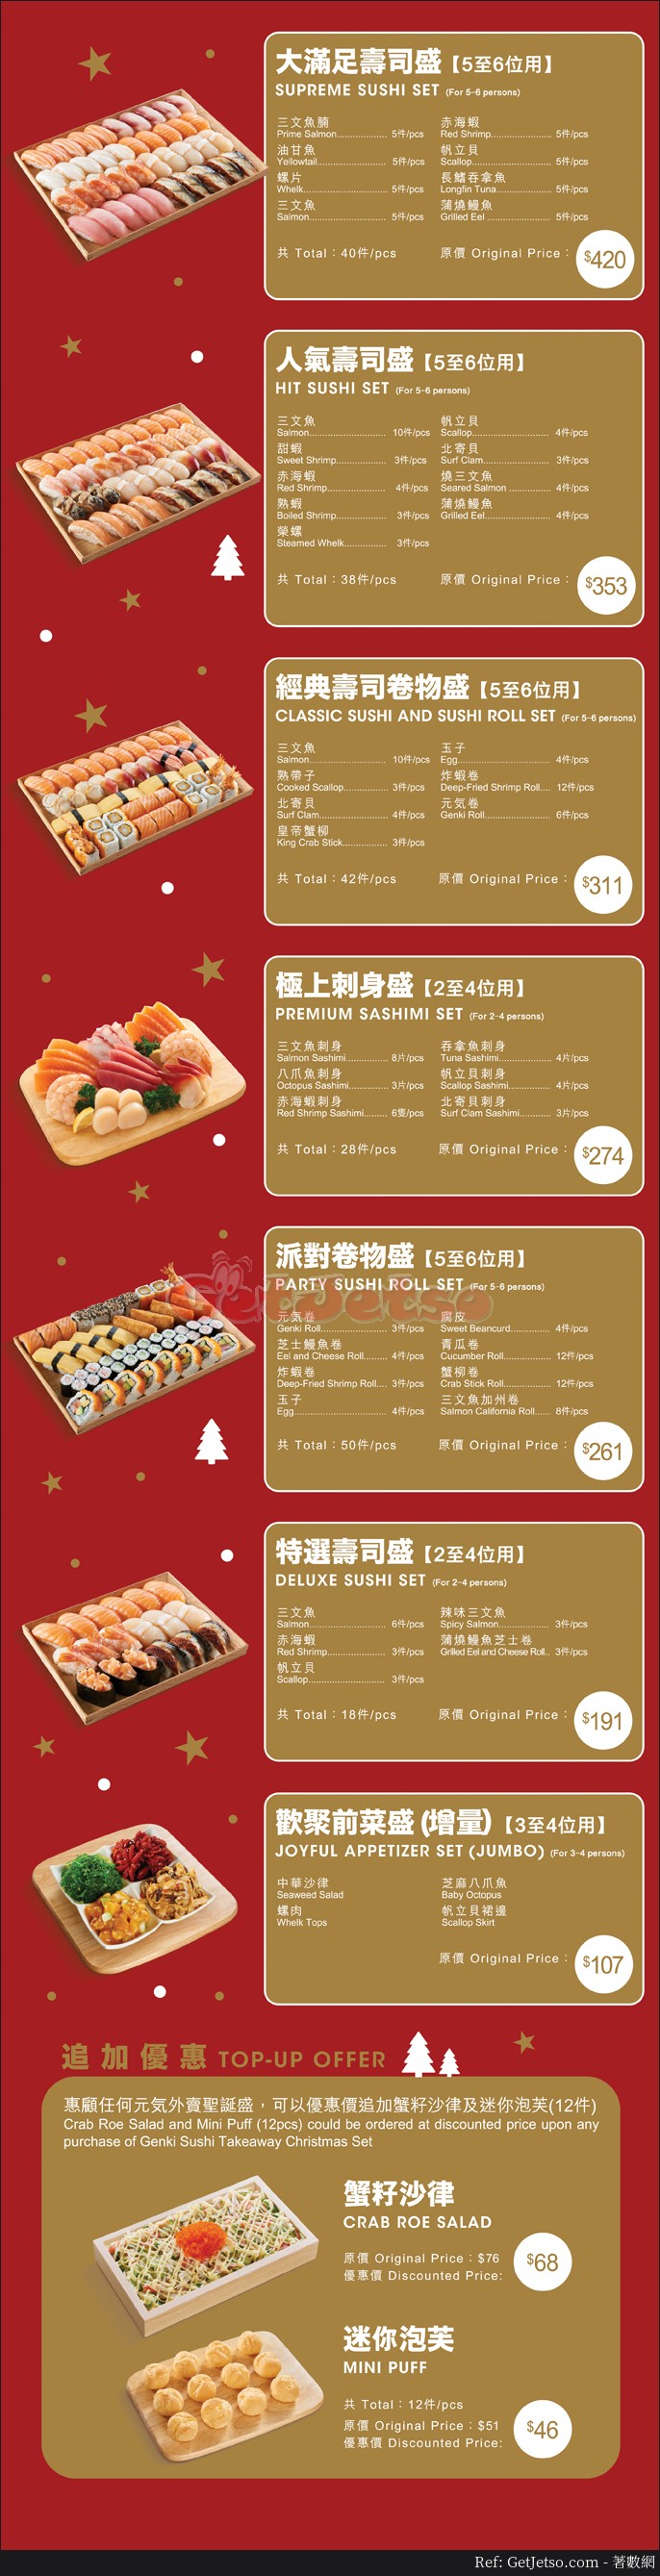 元氣壽司低至8折優先訂購聖誕優惠(至18年12月19日)圖片2